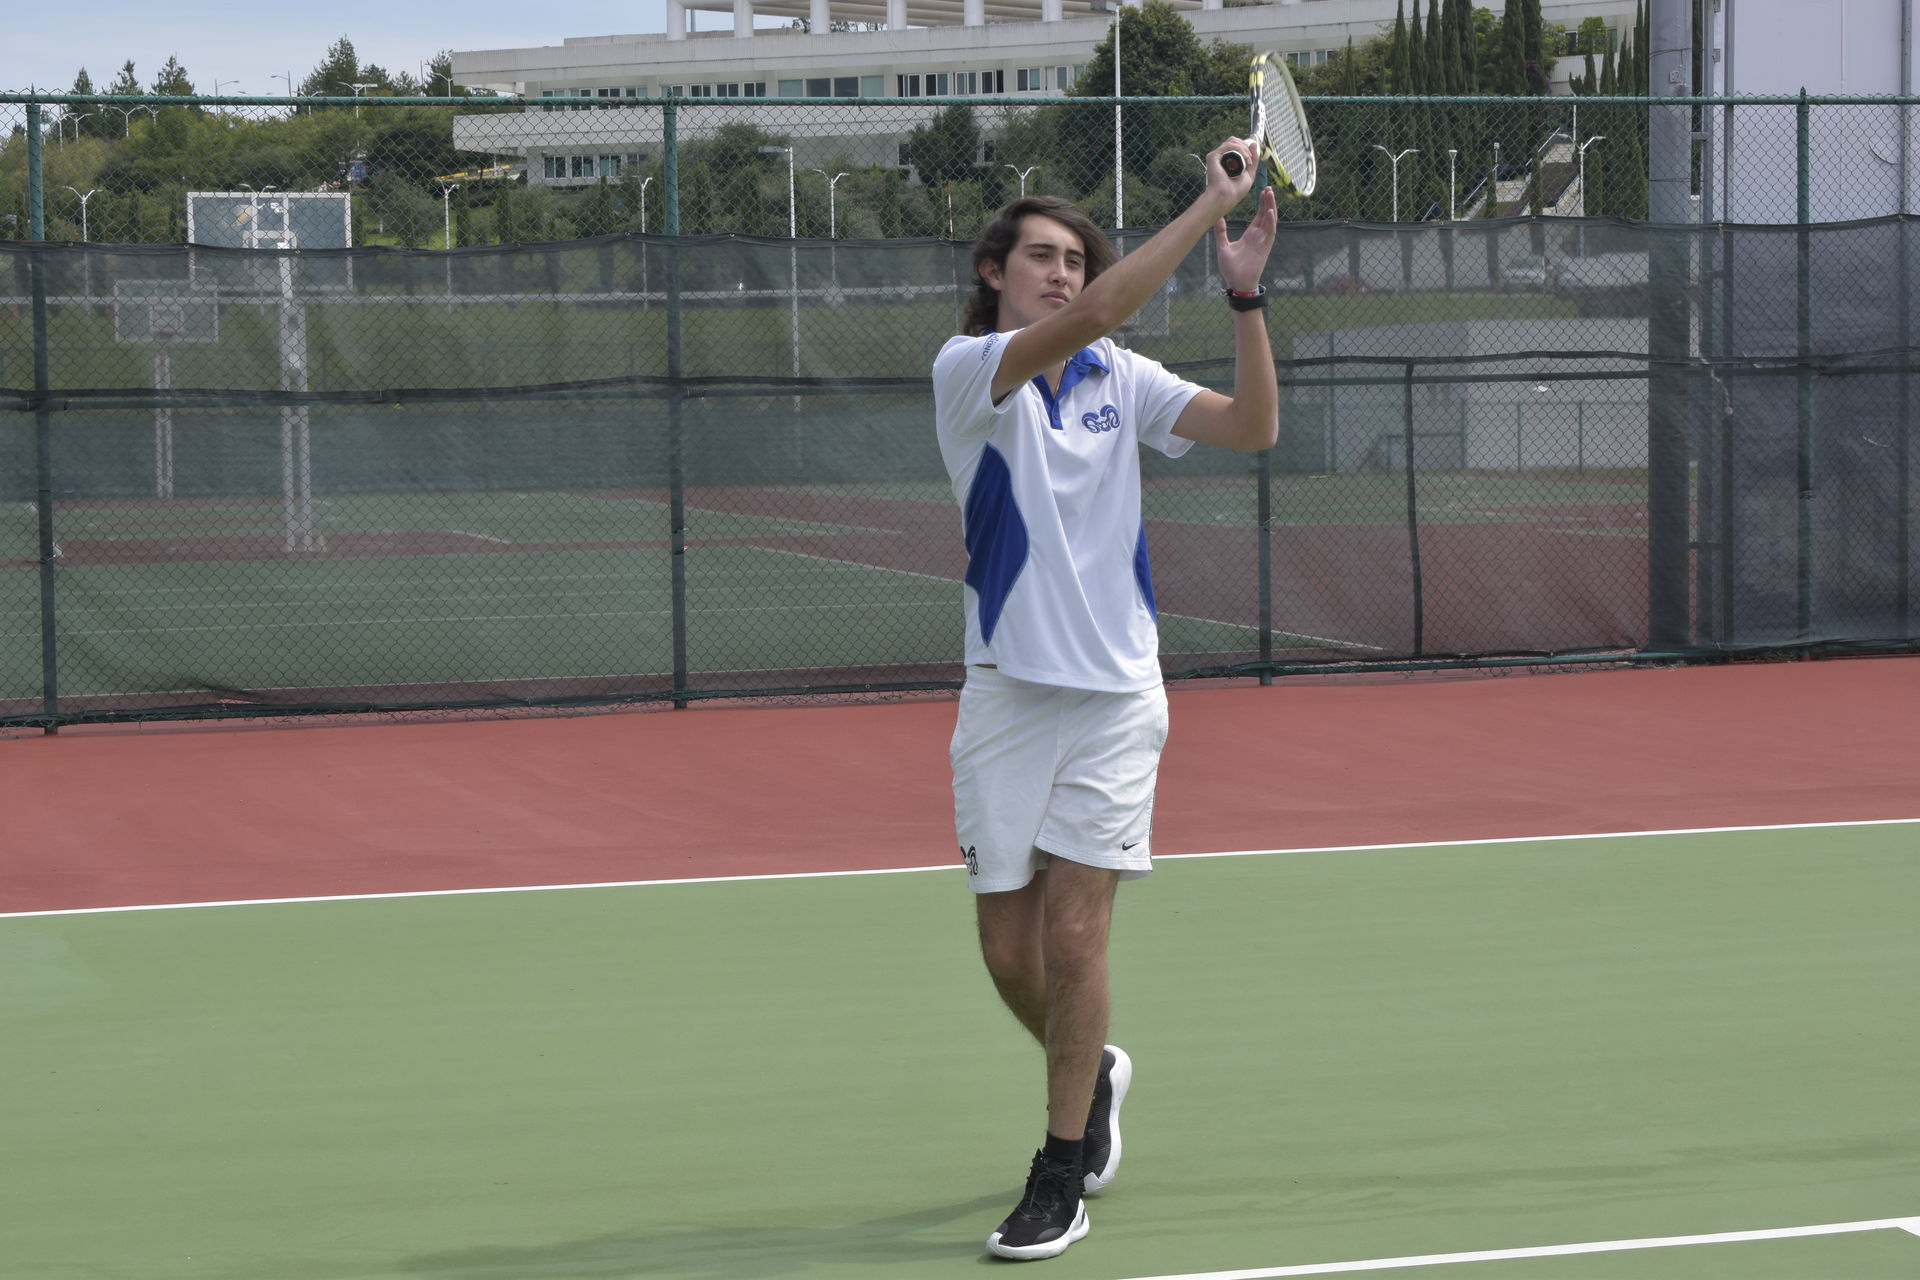 Práctica de tennis en el campus